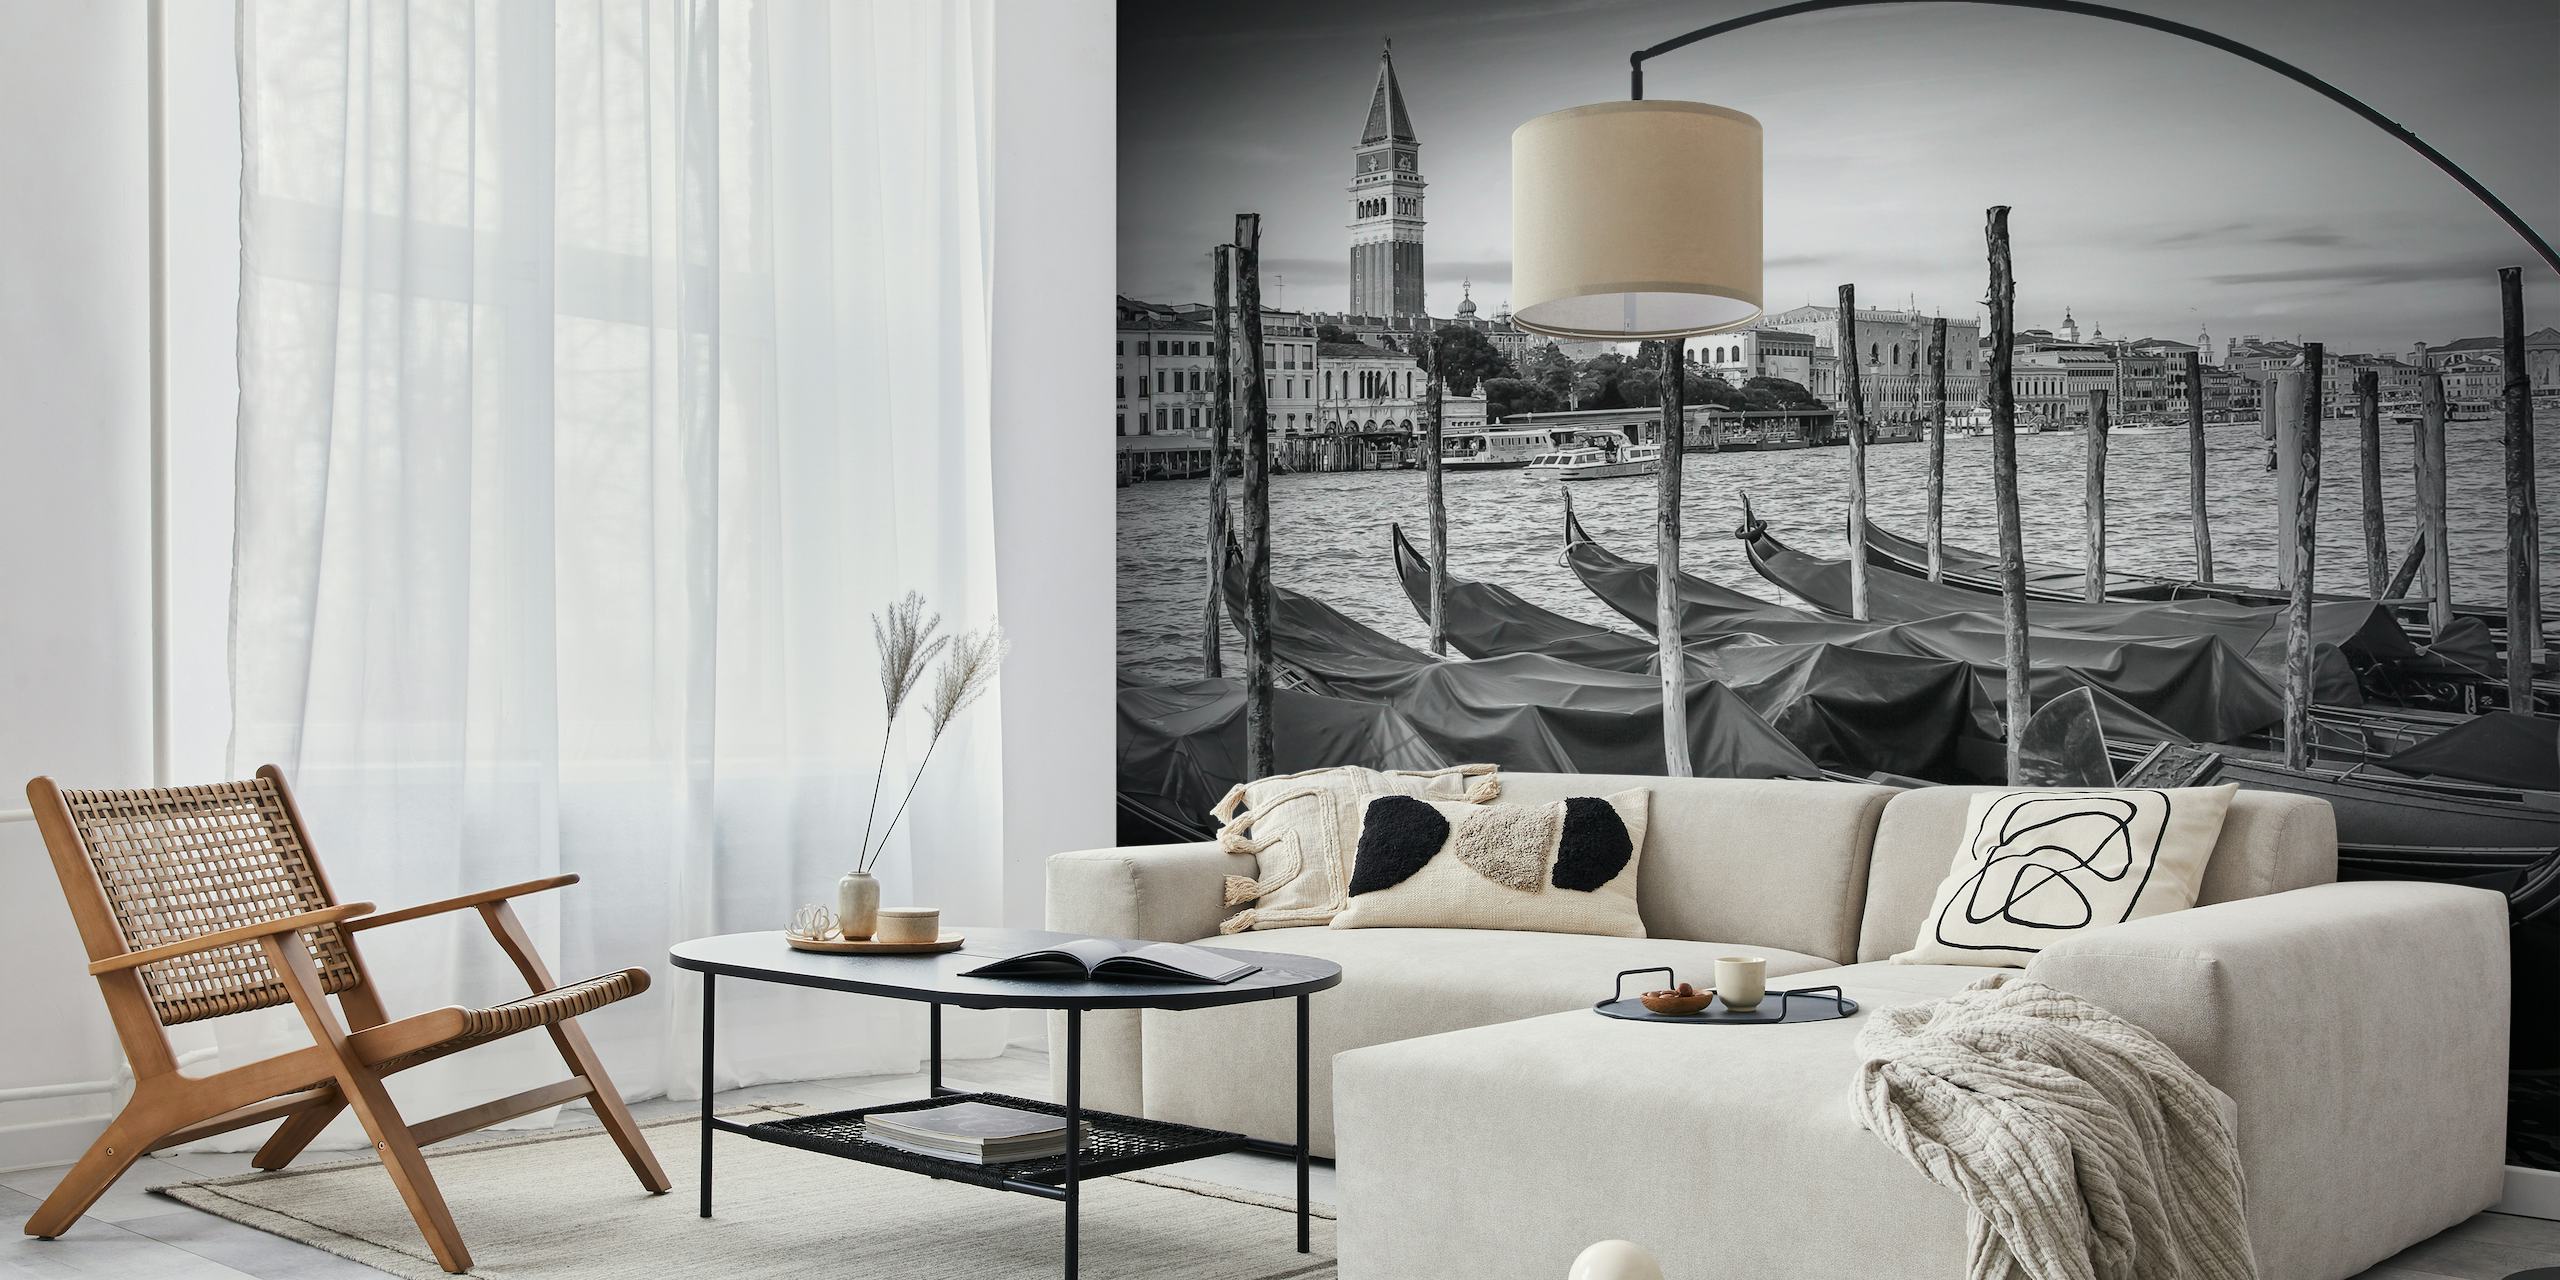 Svart-hvitt veggmaleri av Venezia Grand Canal med gondoler og historisk arkitektur